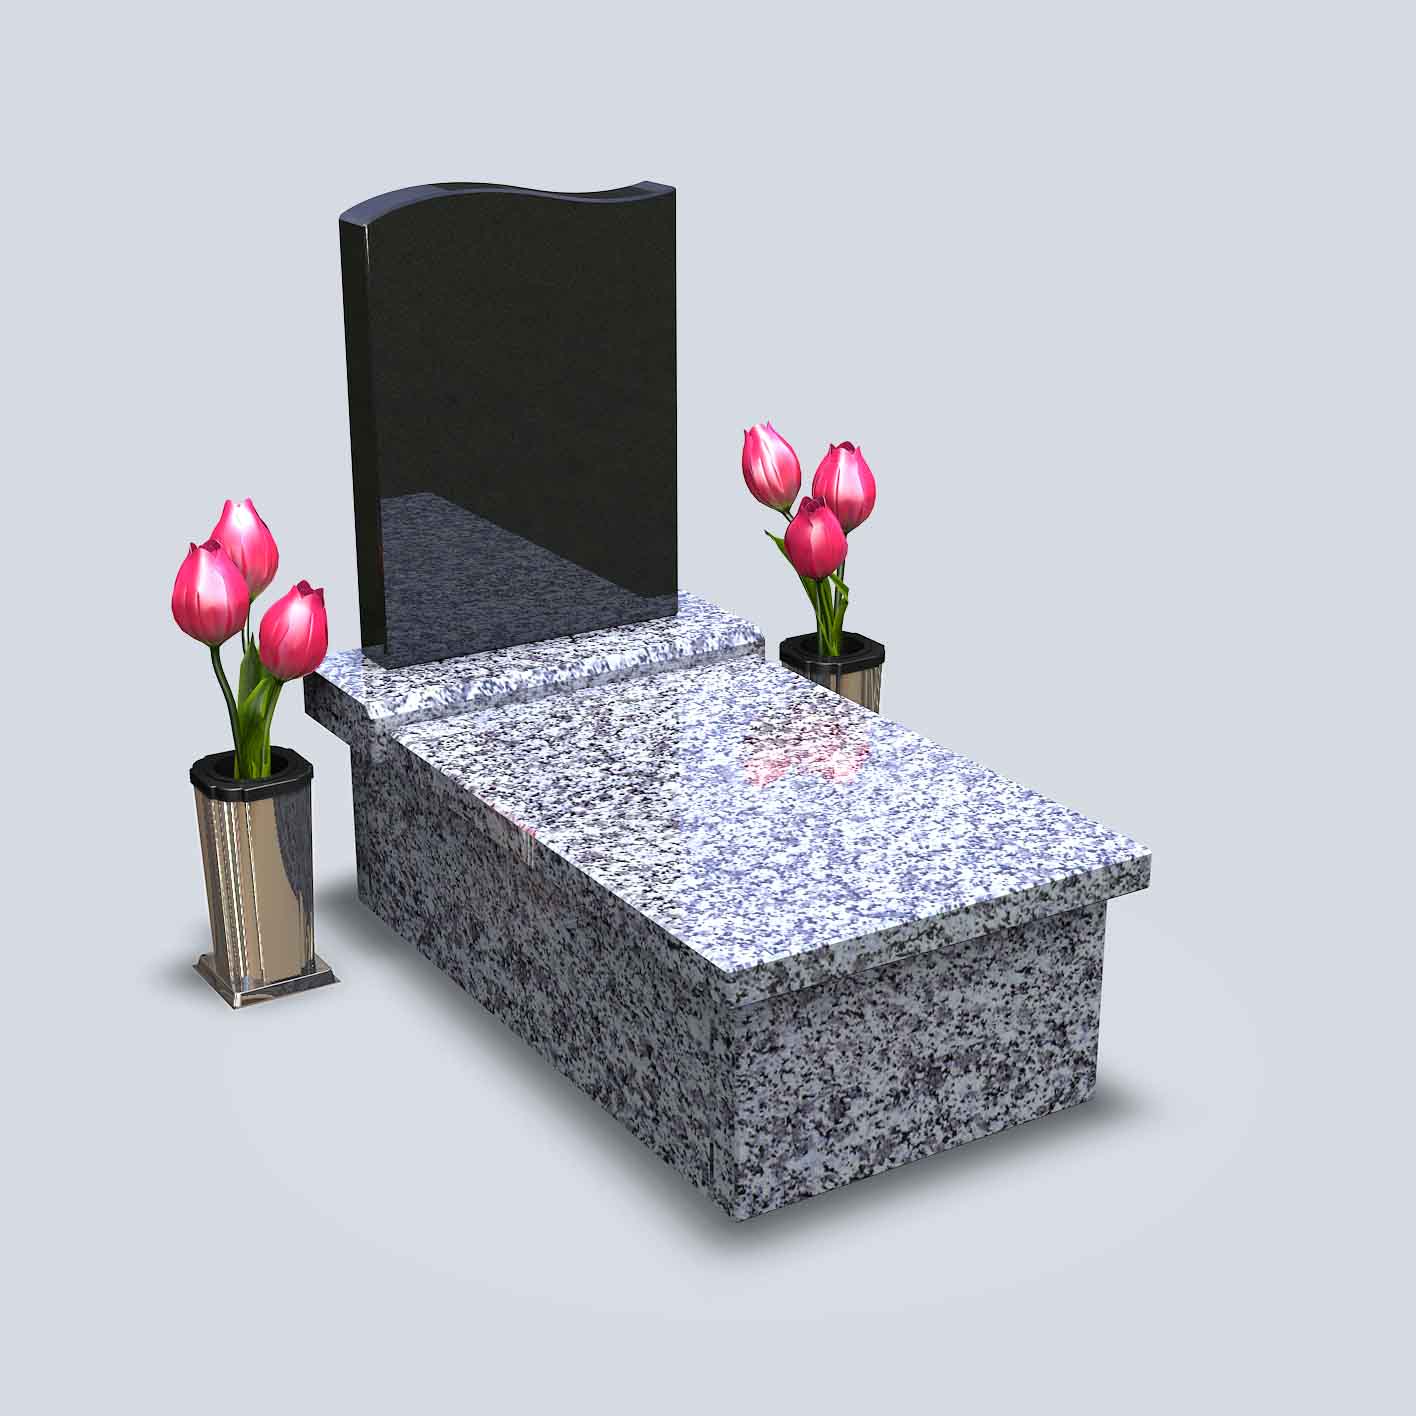 Urnový hrob z bledej žuly s čiernym pomníkom, vázou a červenými tulipánmi